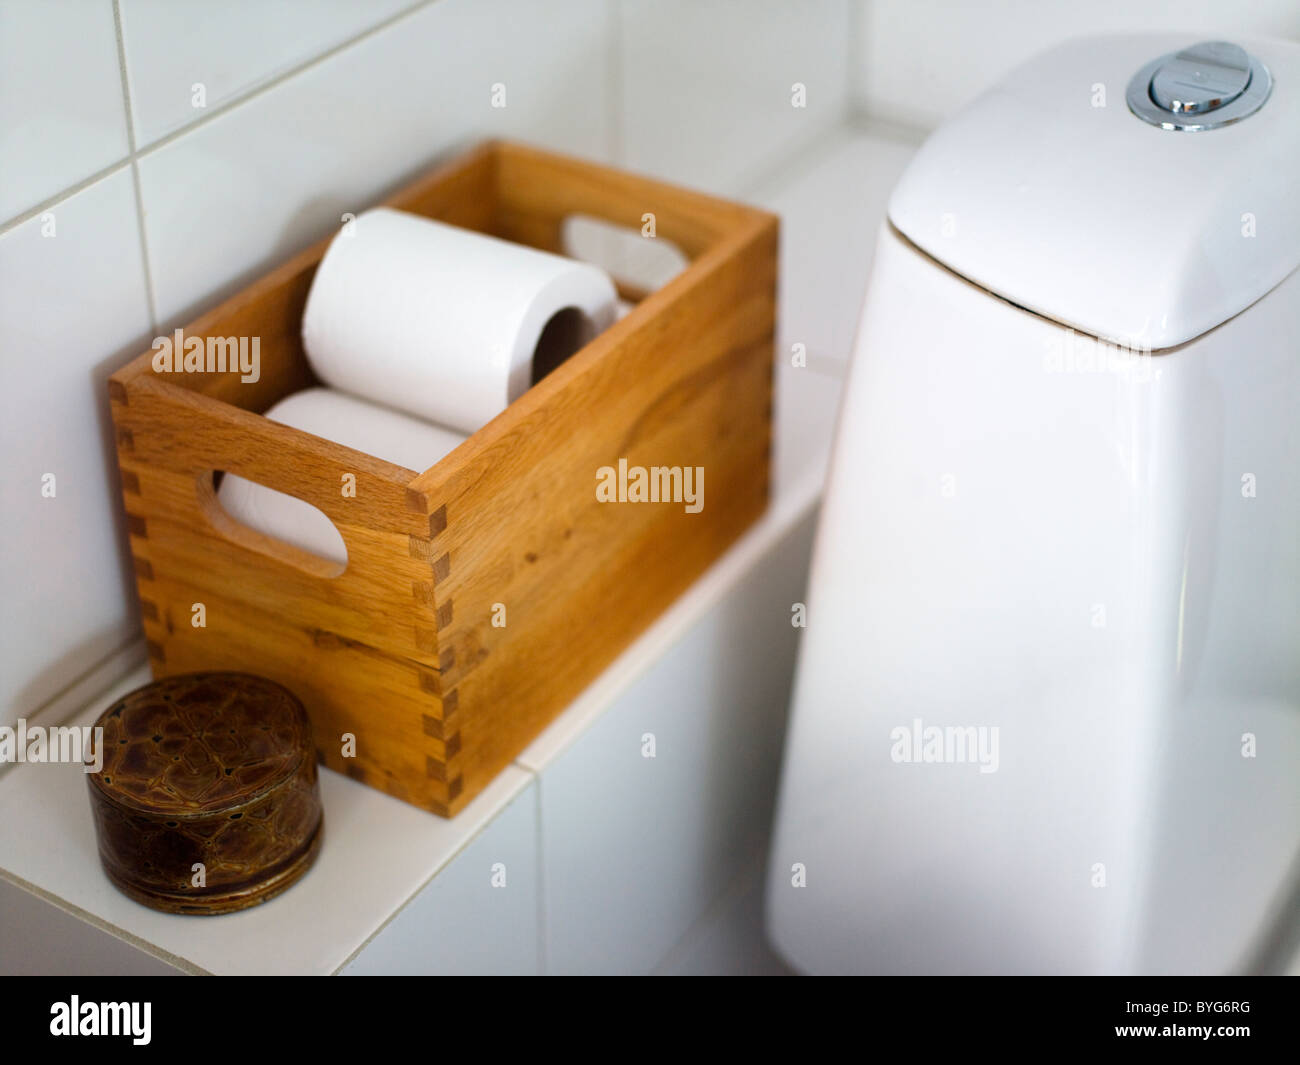 WC-Papier in Kiste auf Bad Regal Stockfotografie - Alamy